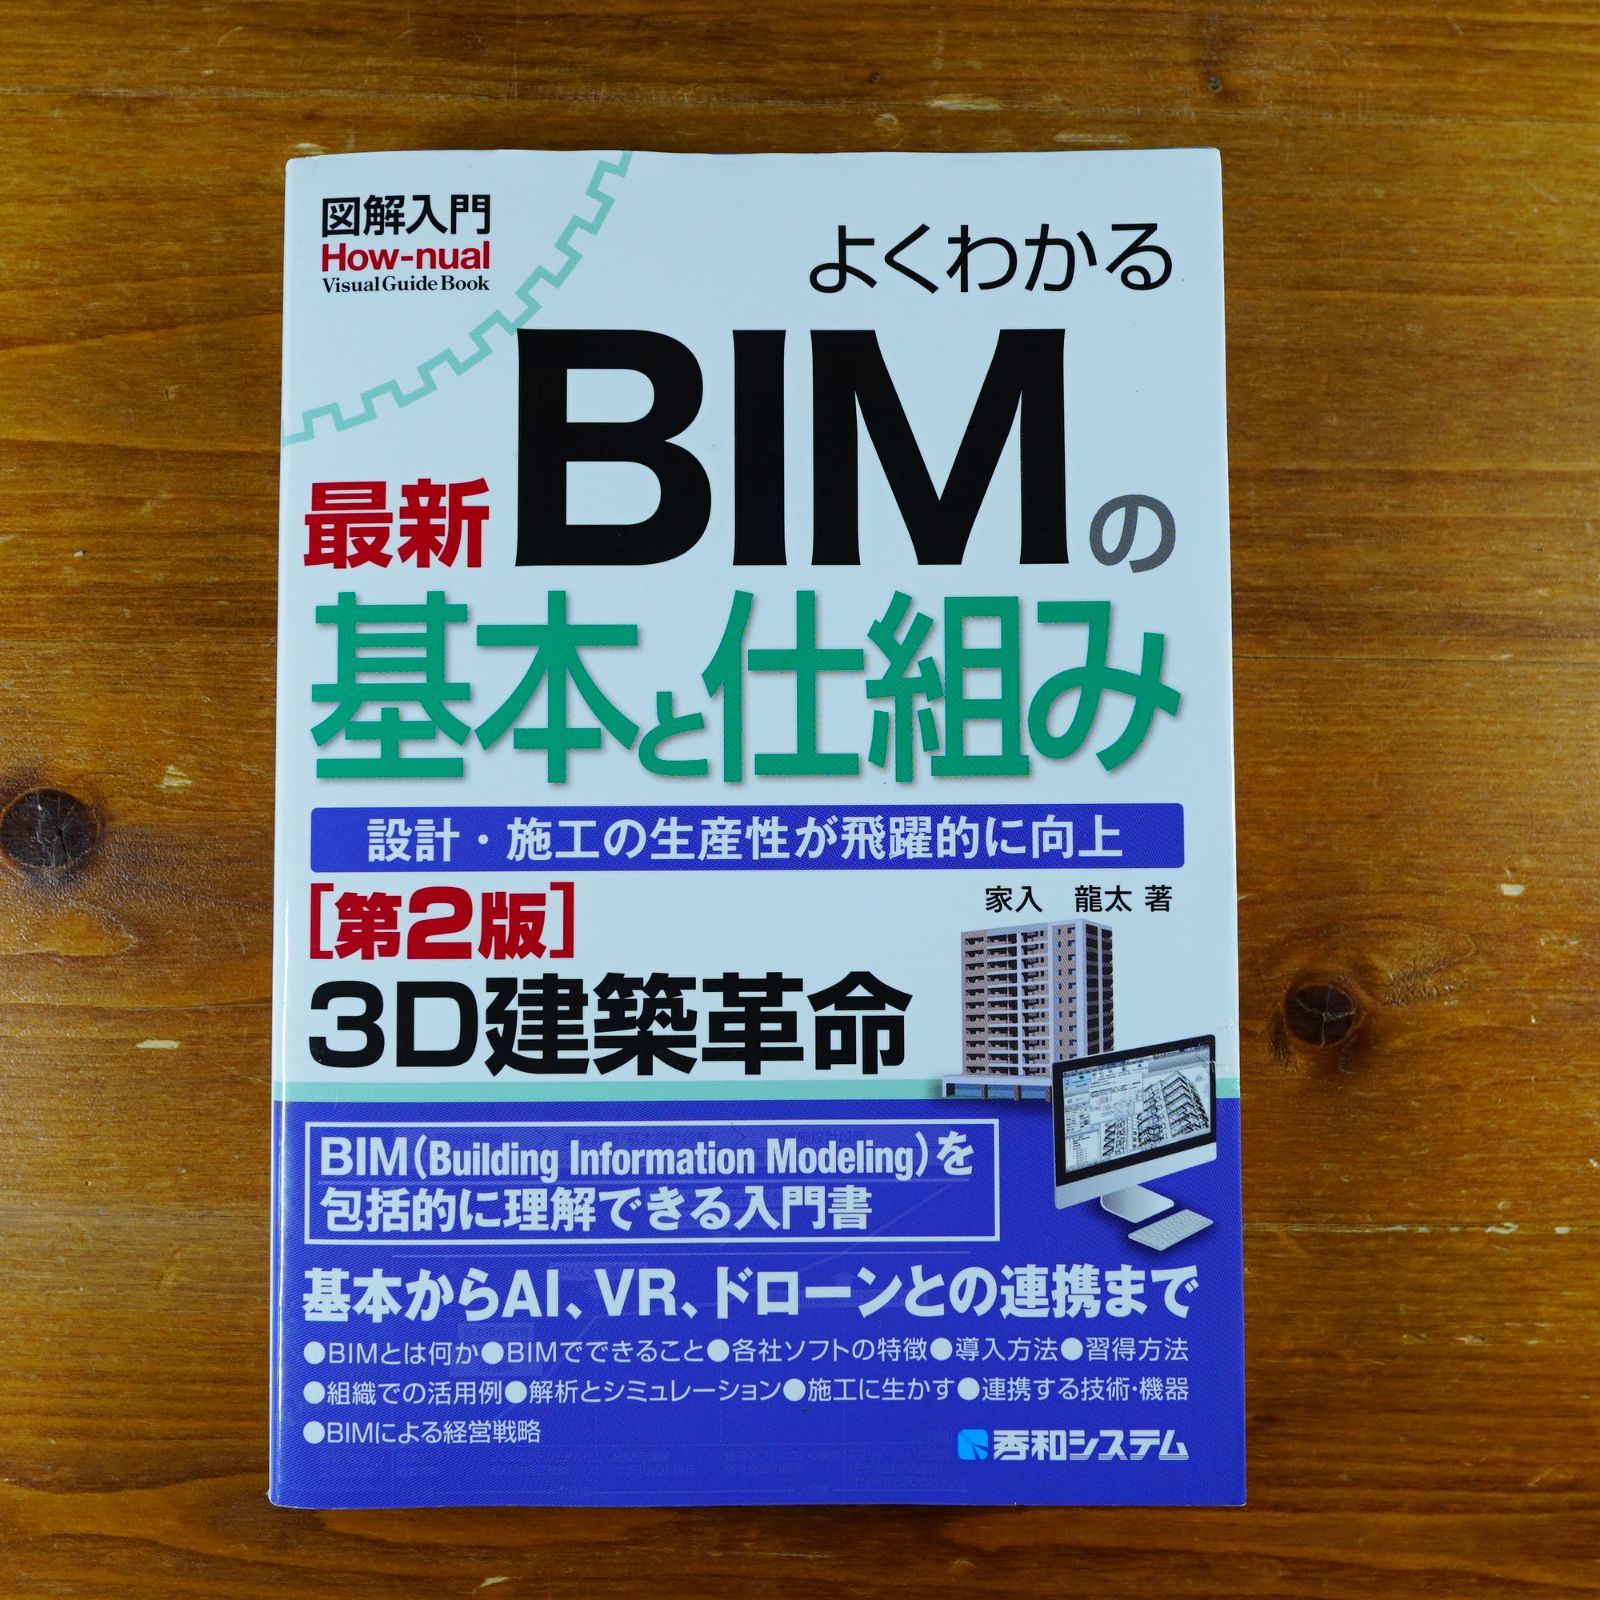 図解入門 よくわかる最新BIMの基本と仕組み[第2版] d2404 - メルカリ